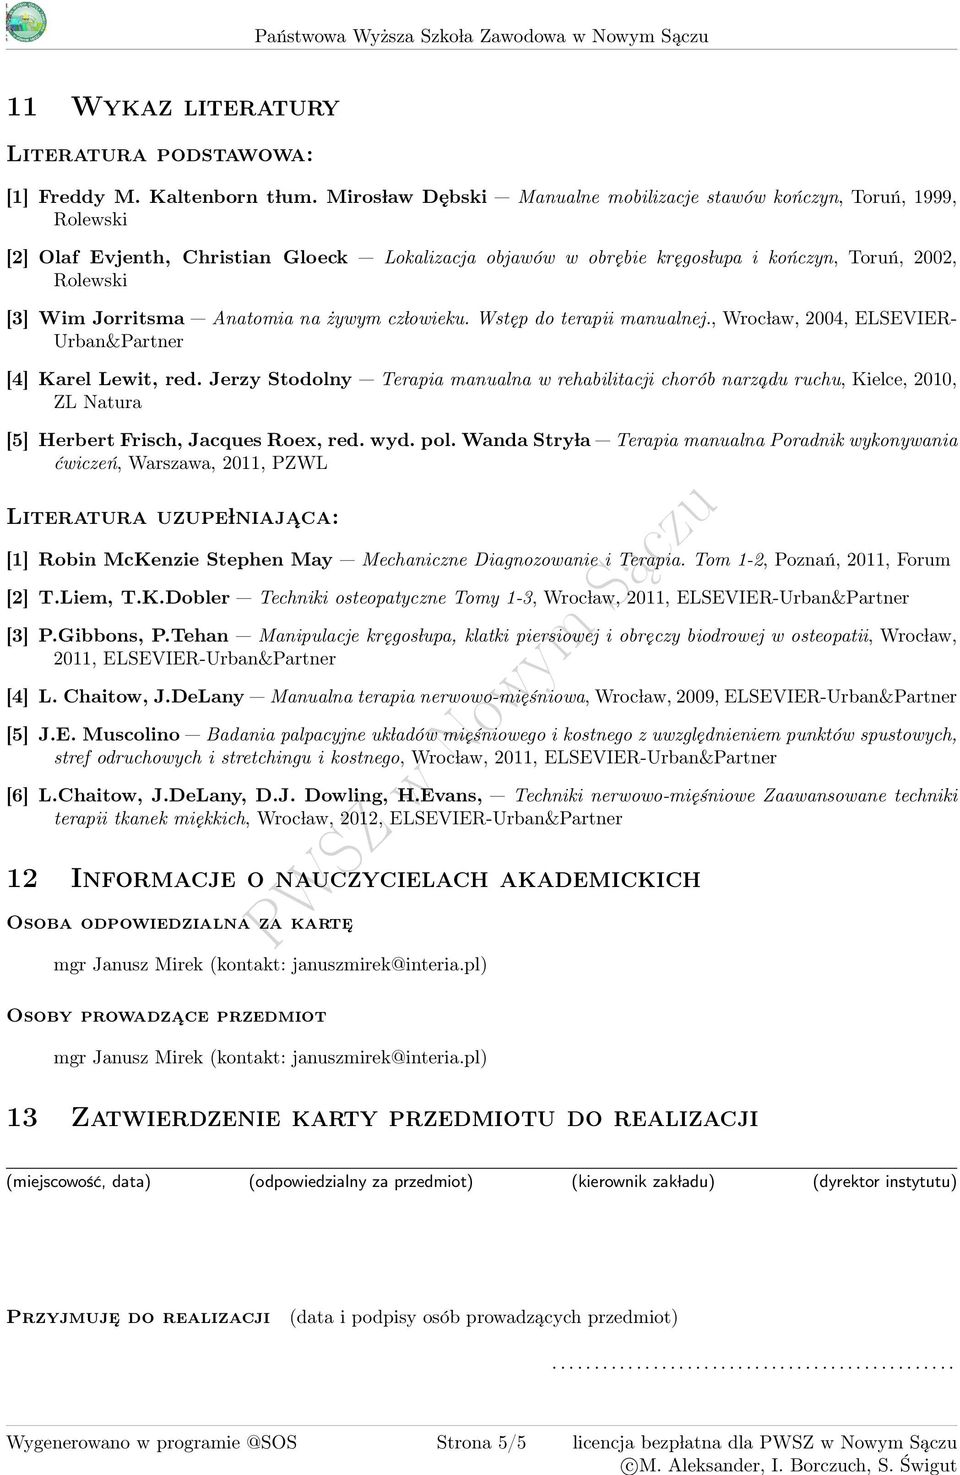 Anatomia na żywym cz lowieku. Wstęp do terapii., Wroc law, 00, ELSEVIER- Urban&Partner [] Karel Lewit, red.